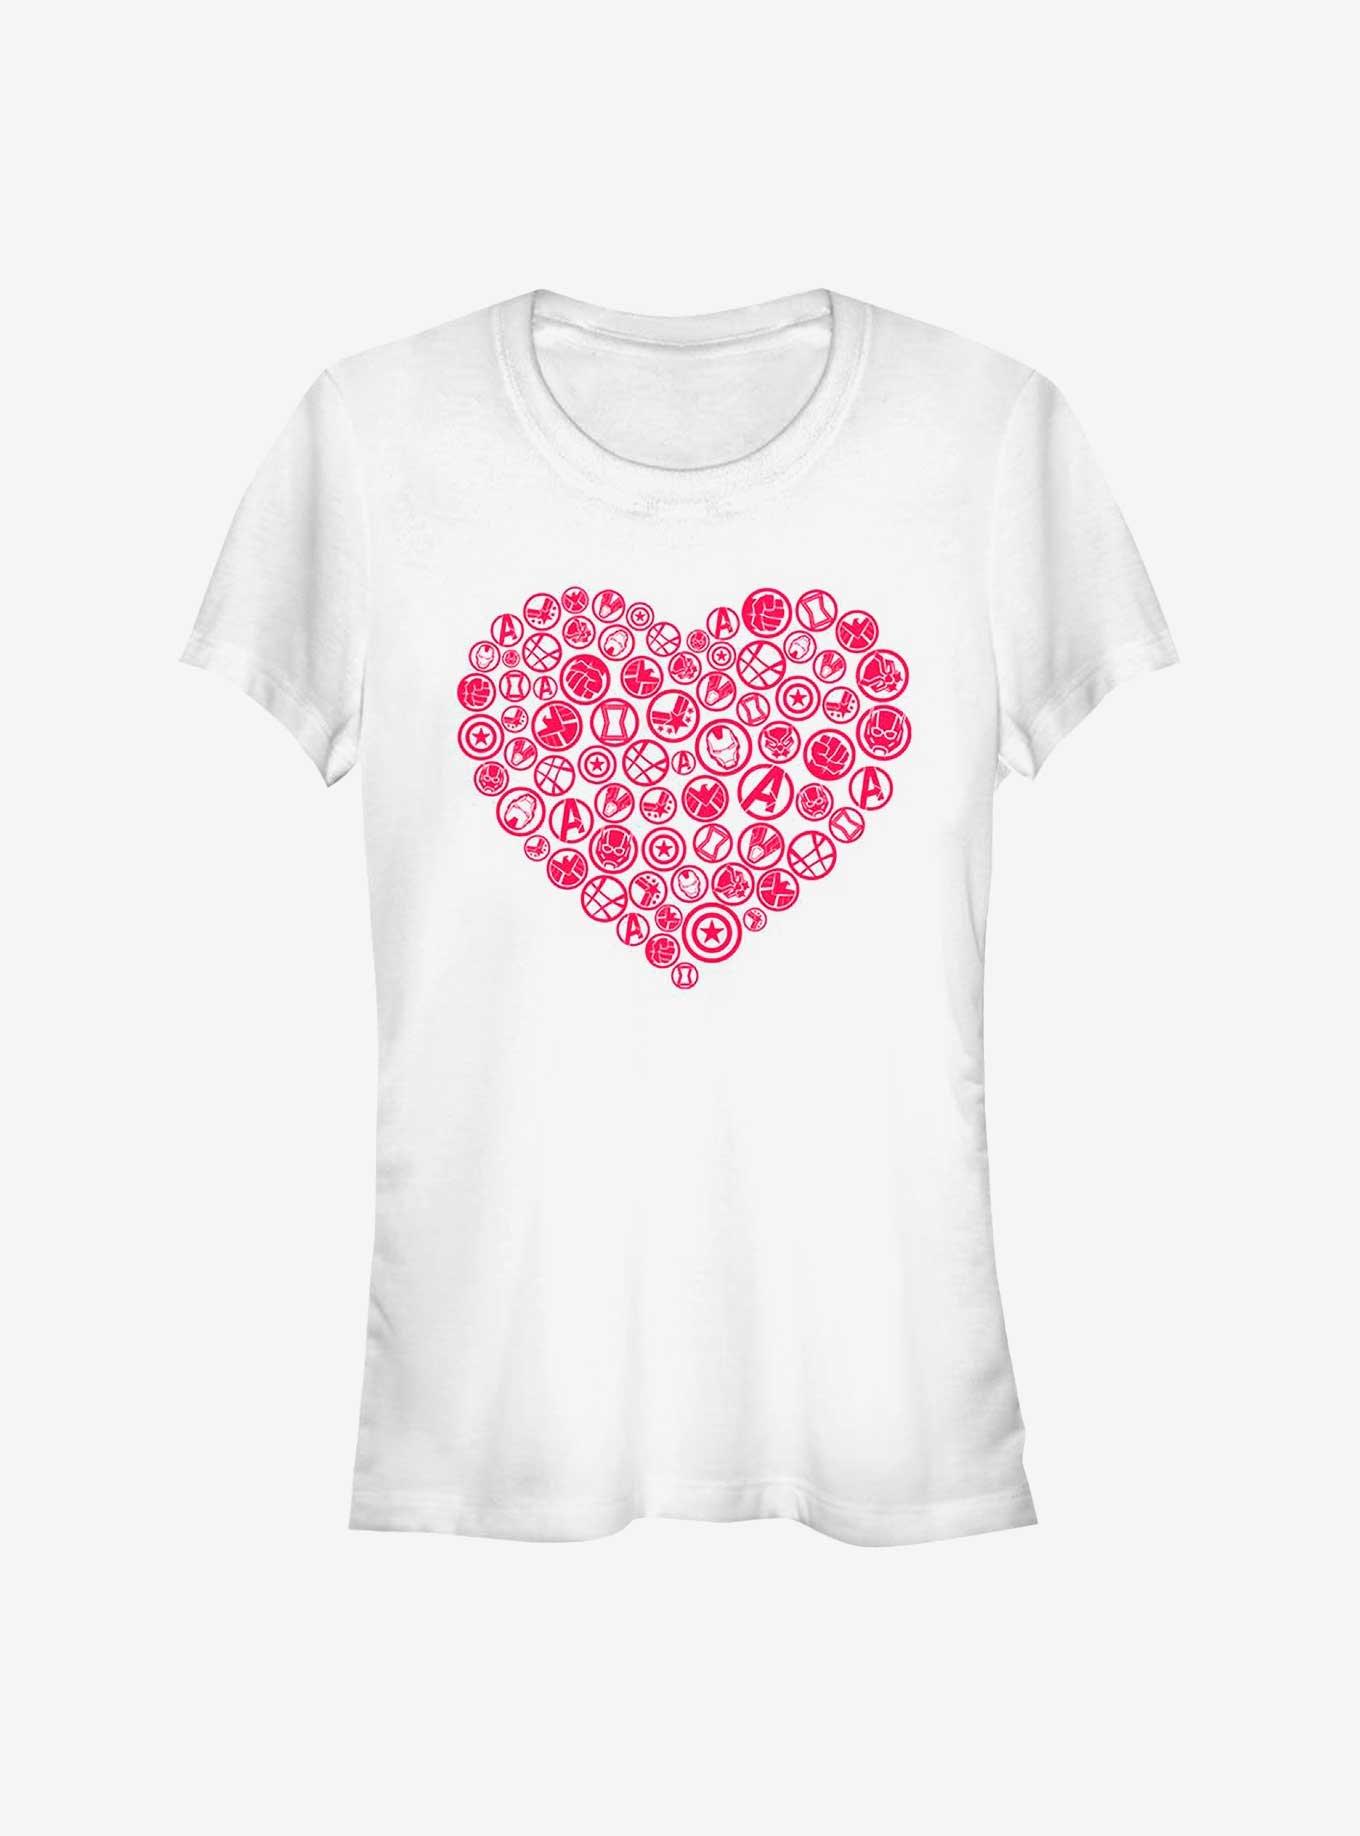 Marvel Avengers Heart Icons Girls T-Shirt, WHITE, hi-res